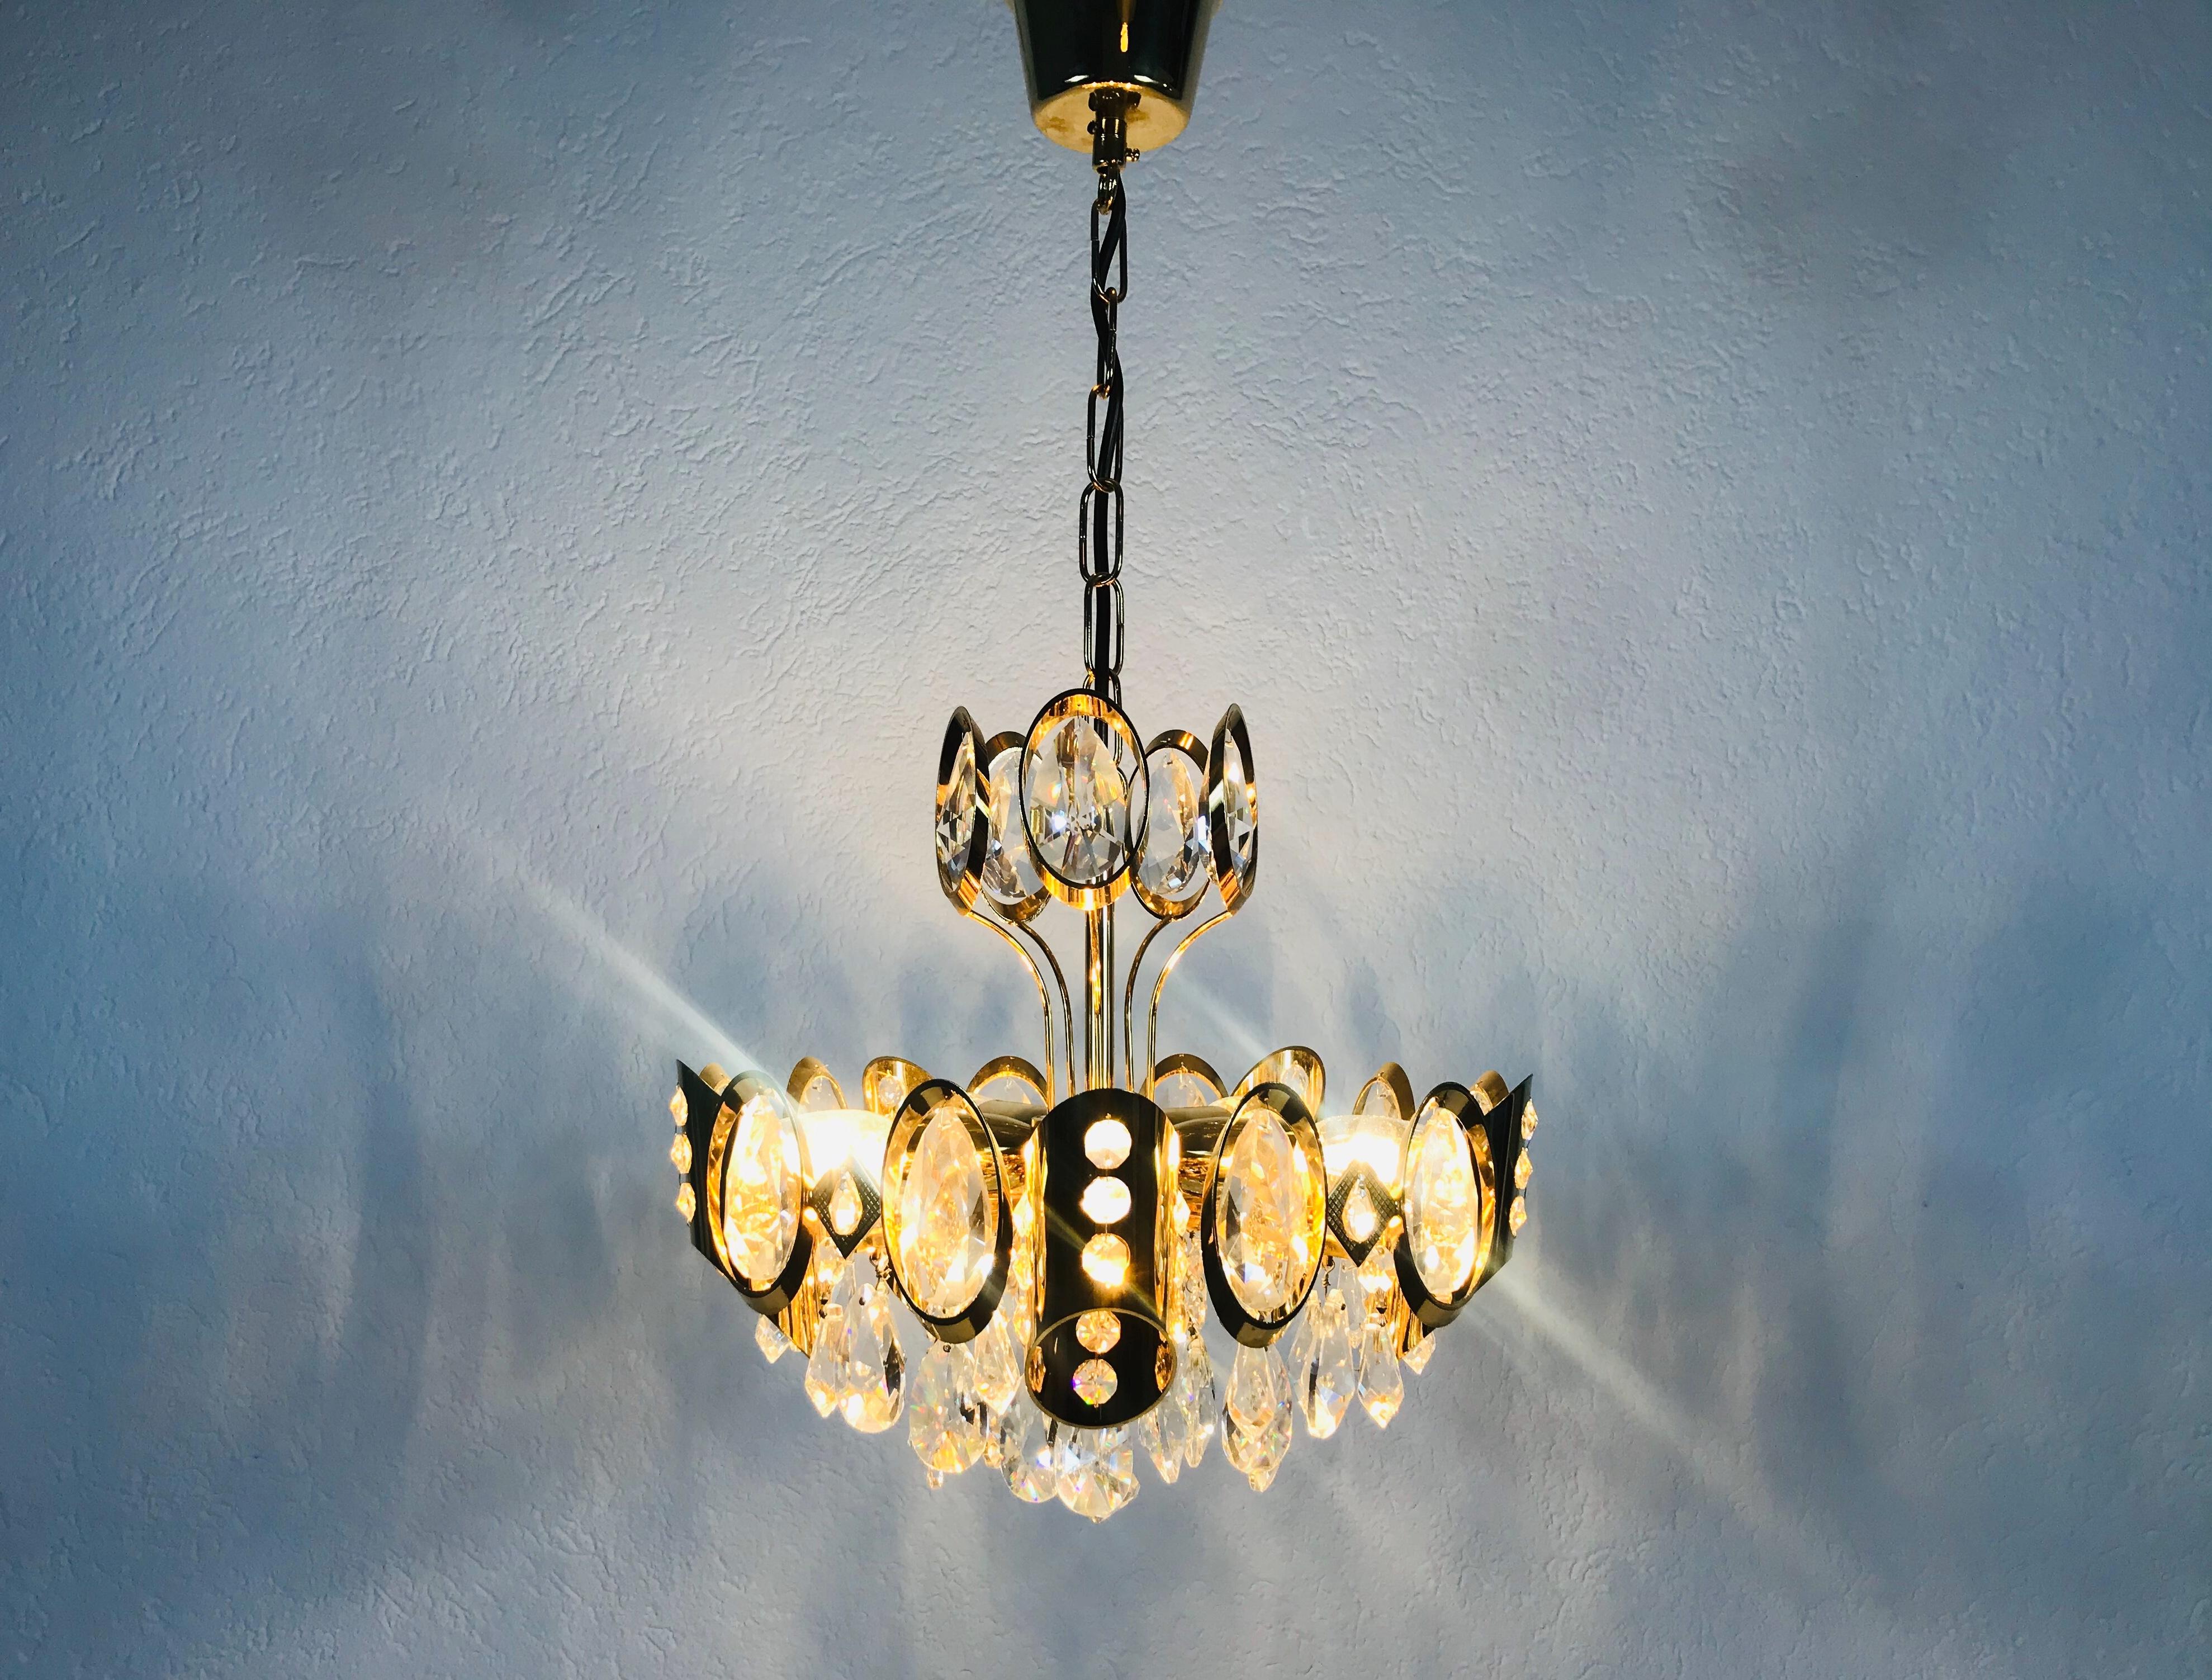 Un lustre extraordinaire de Palwa, fabriqué en Allemagne dans les années 1960. La lampe a un design très élégant. Il est réalisé dans la période de Hollywood Regency. Corps rond en laiton doré avec cinq prises E14. Le corps est entouré de cristaux